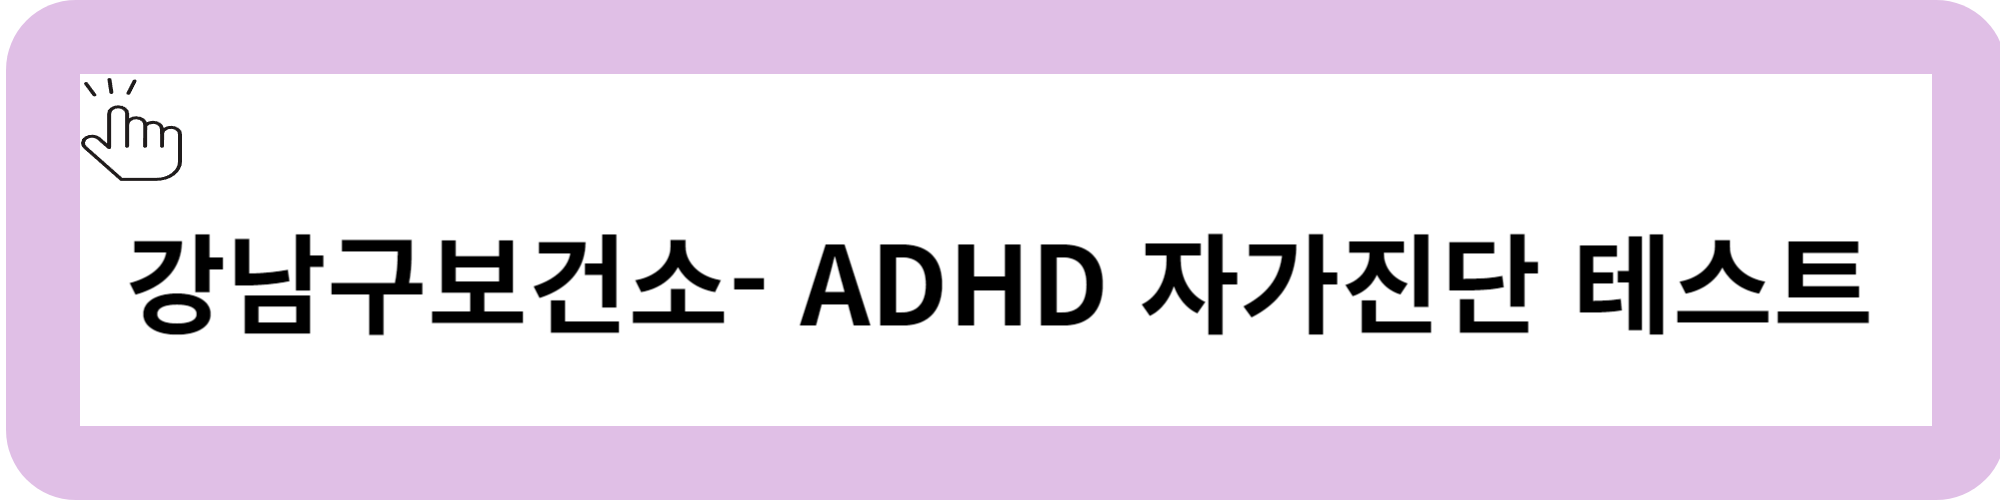 ADHD 테스트